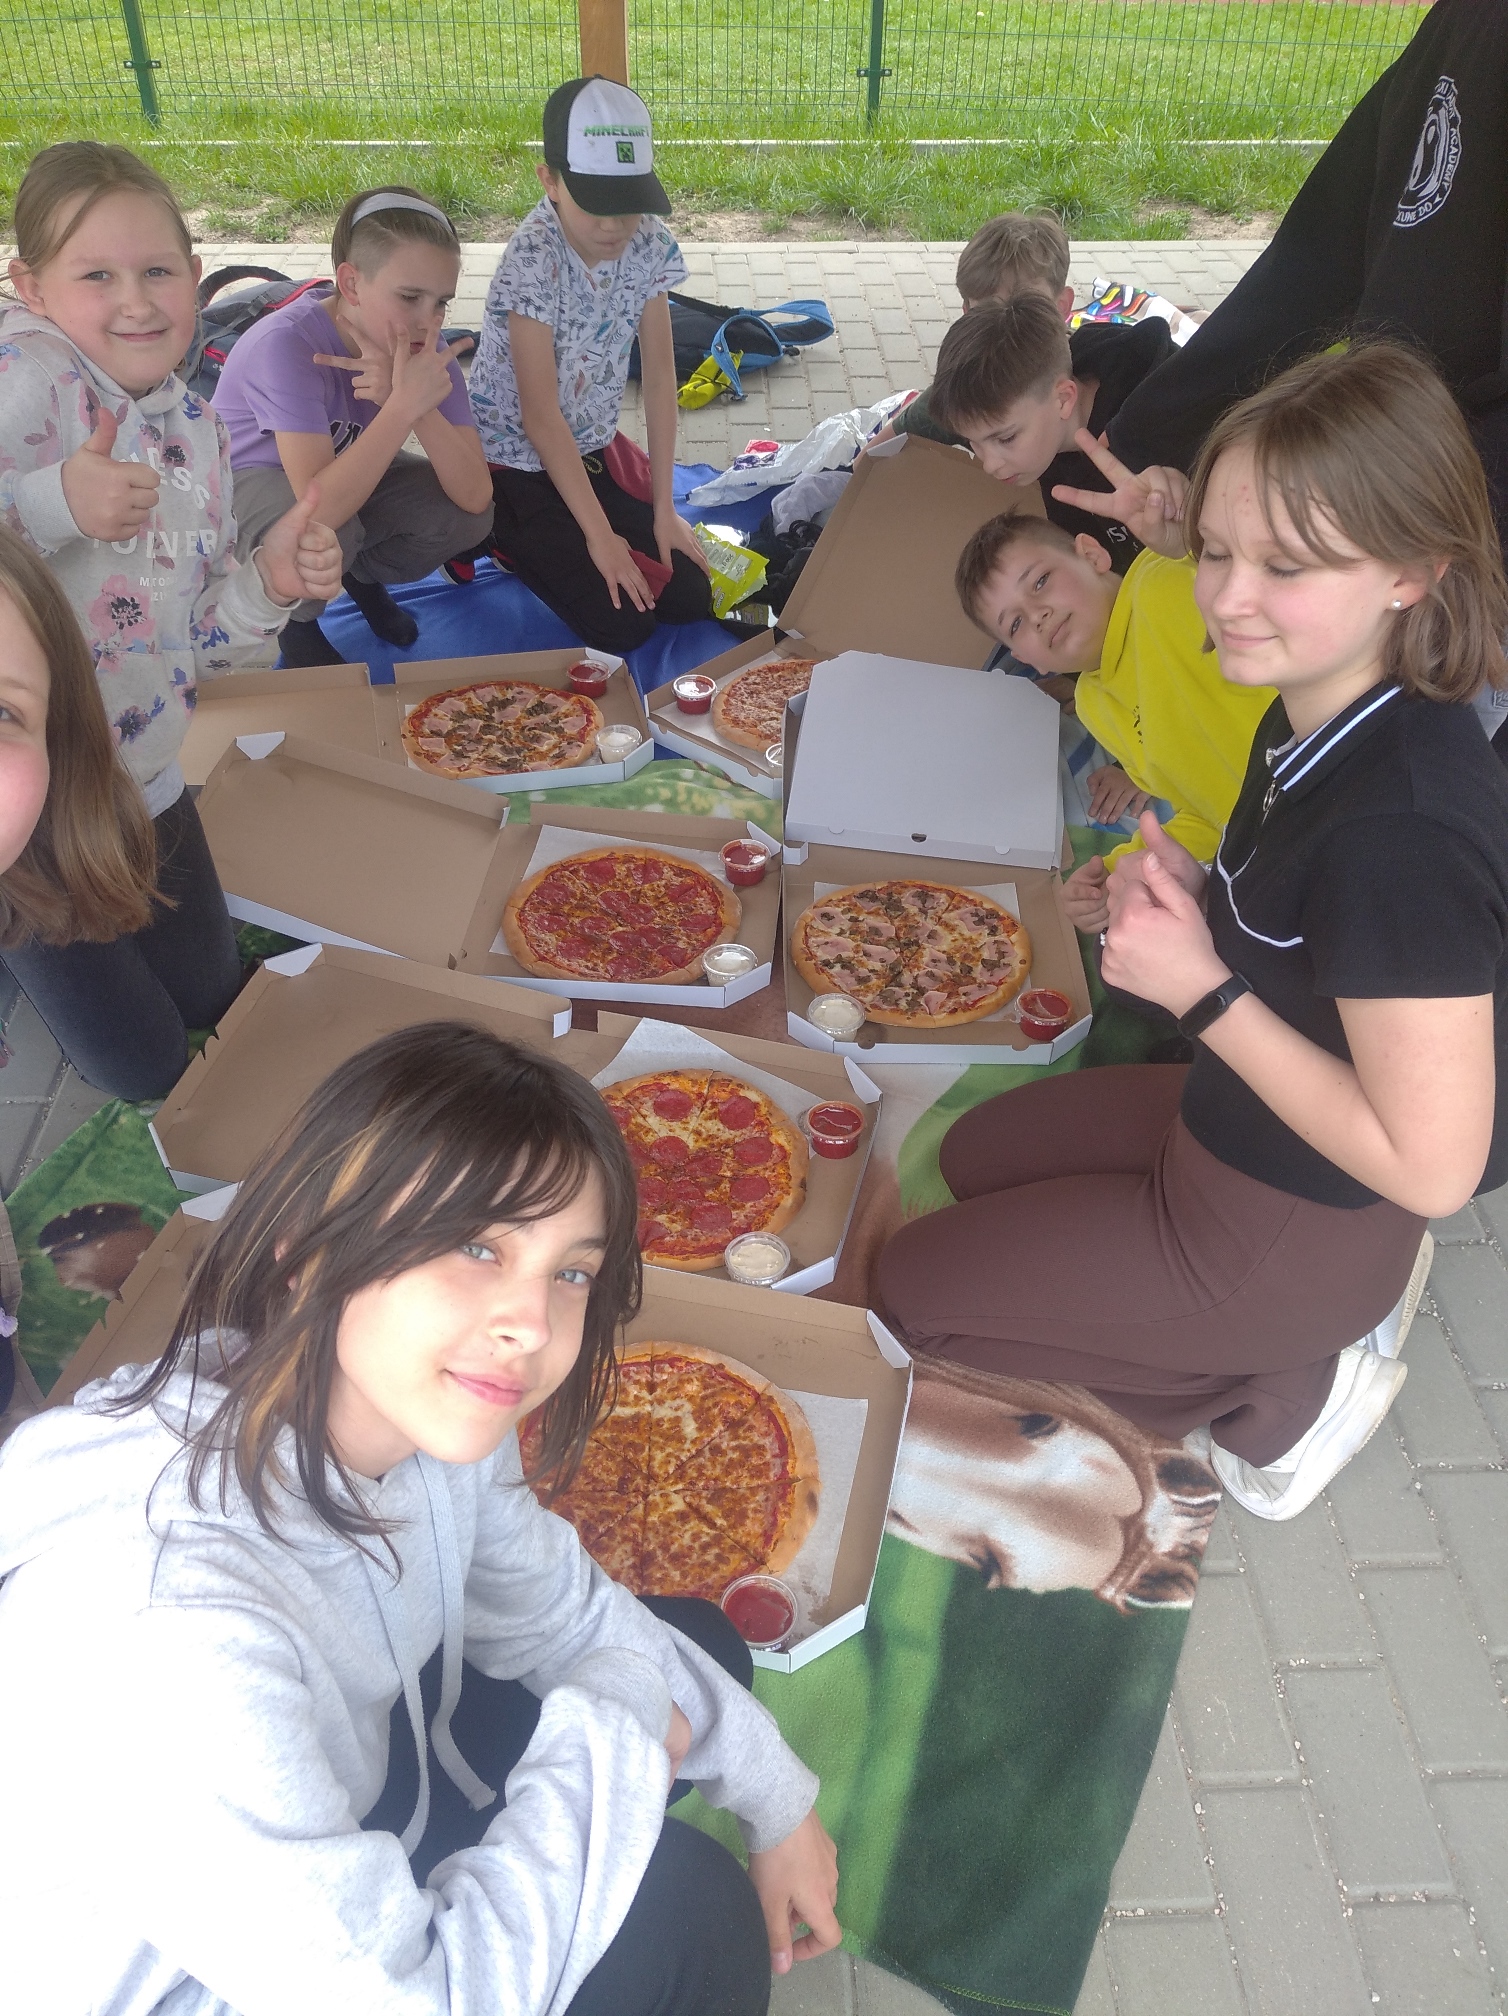 Dzieci jedzą pizzę ułożoną w kartonowych pudełkach przed nimi